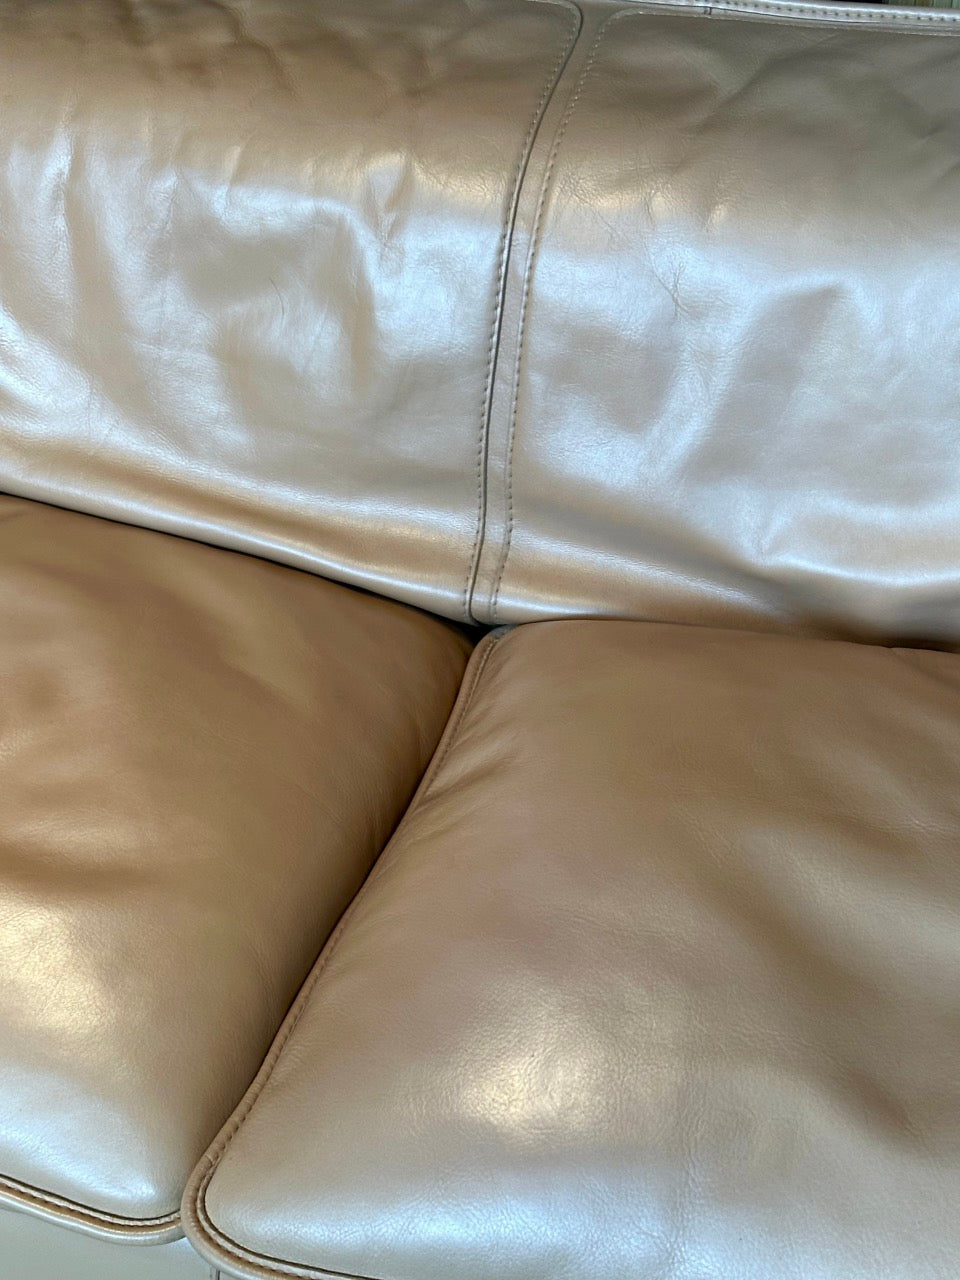 Italian Leather 2 Seater Sofa